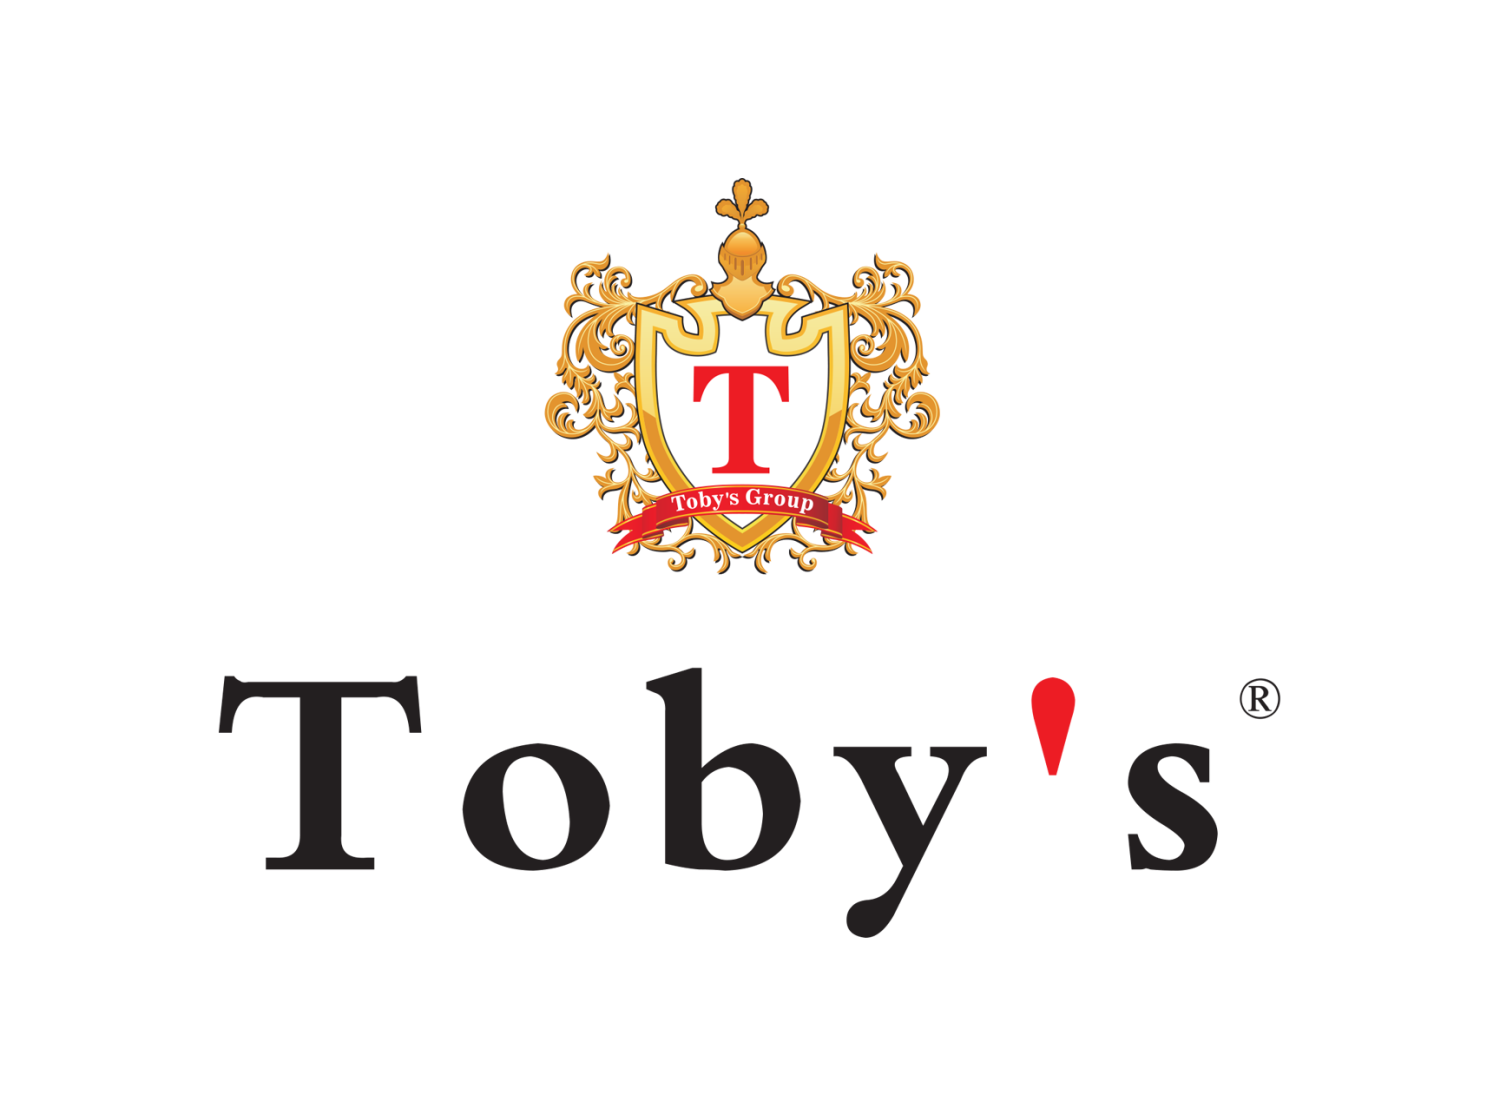 Toby's